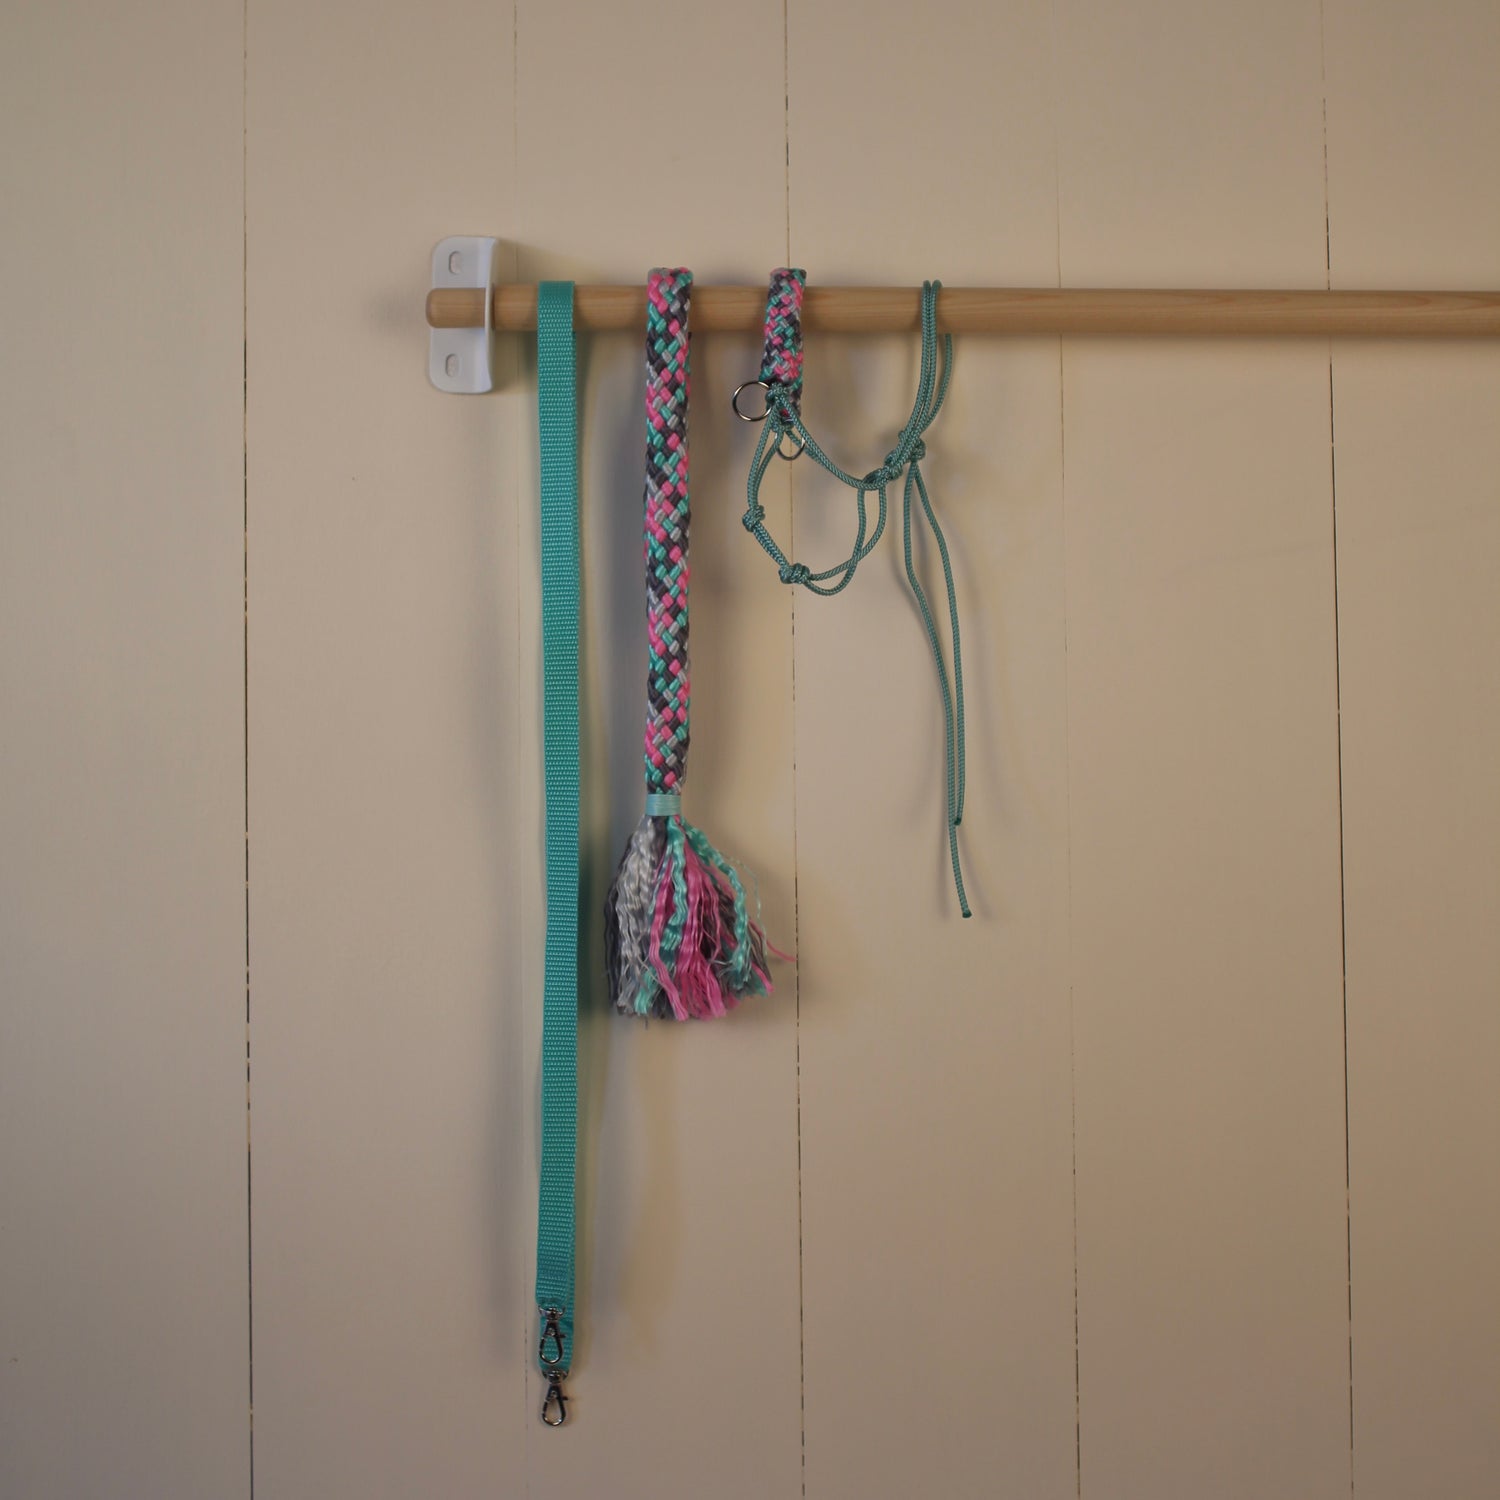 Rope set pink / sea green / gray